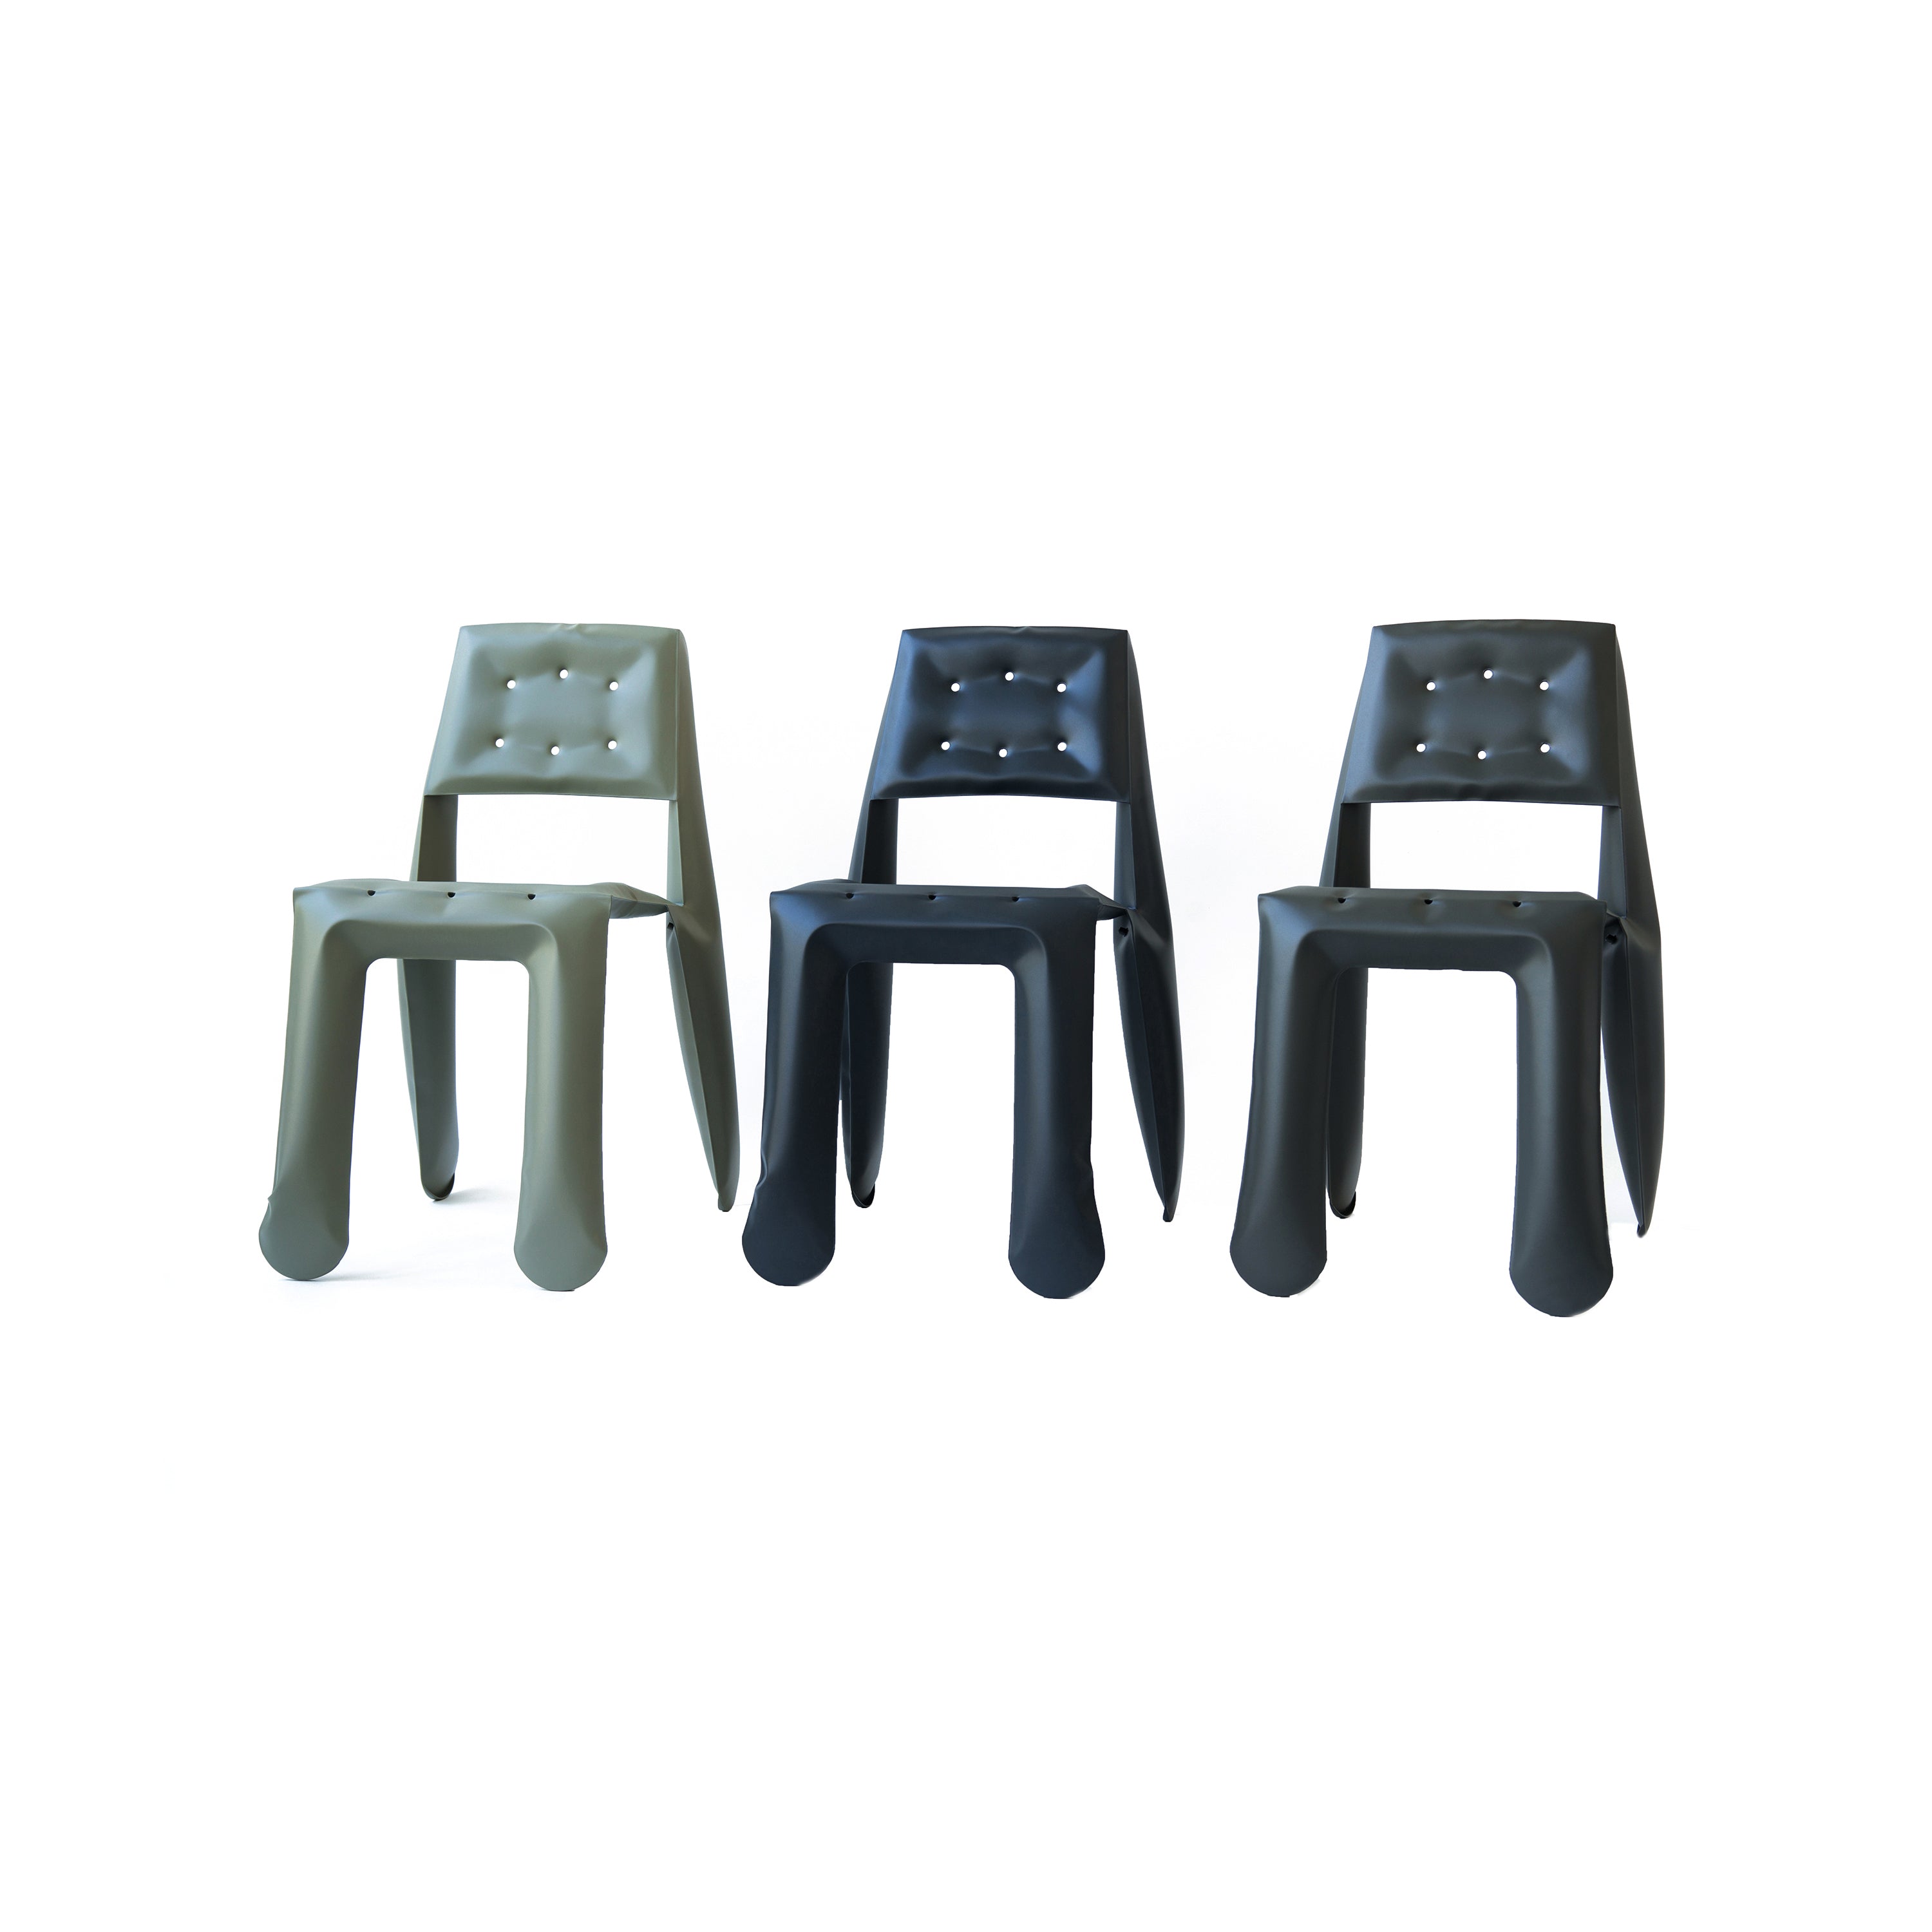 Chippensteel 0.5 Chair: Moss Grey Carbon Steel + Graphite Grey Carbon Steel + Graphite Grey Carbon Steel + Umbra Grey Carbon Steel